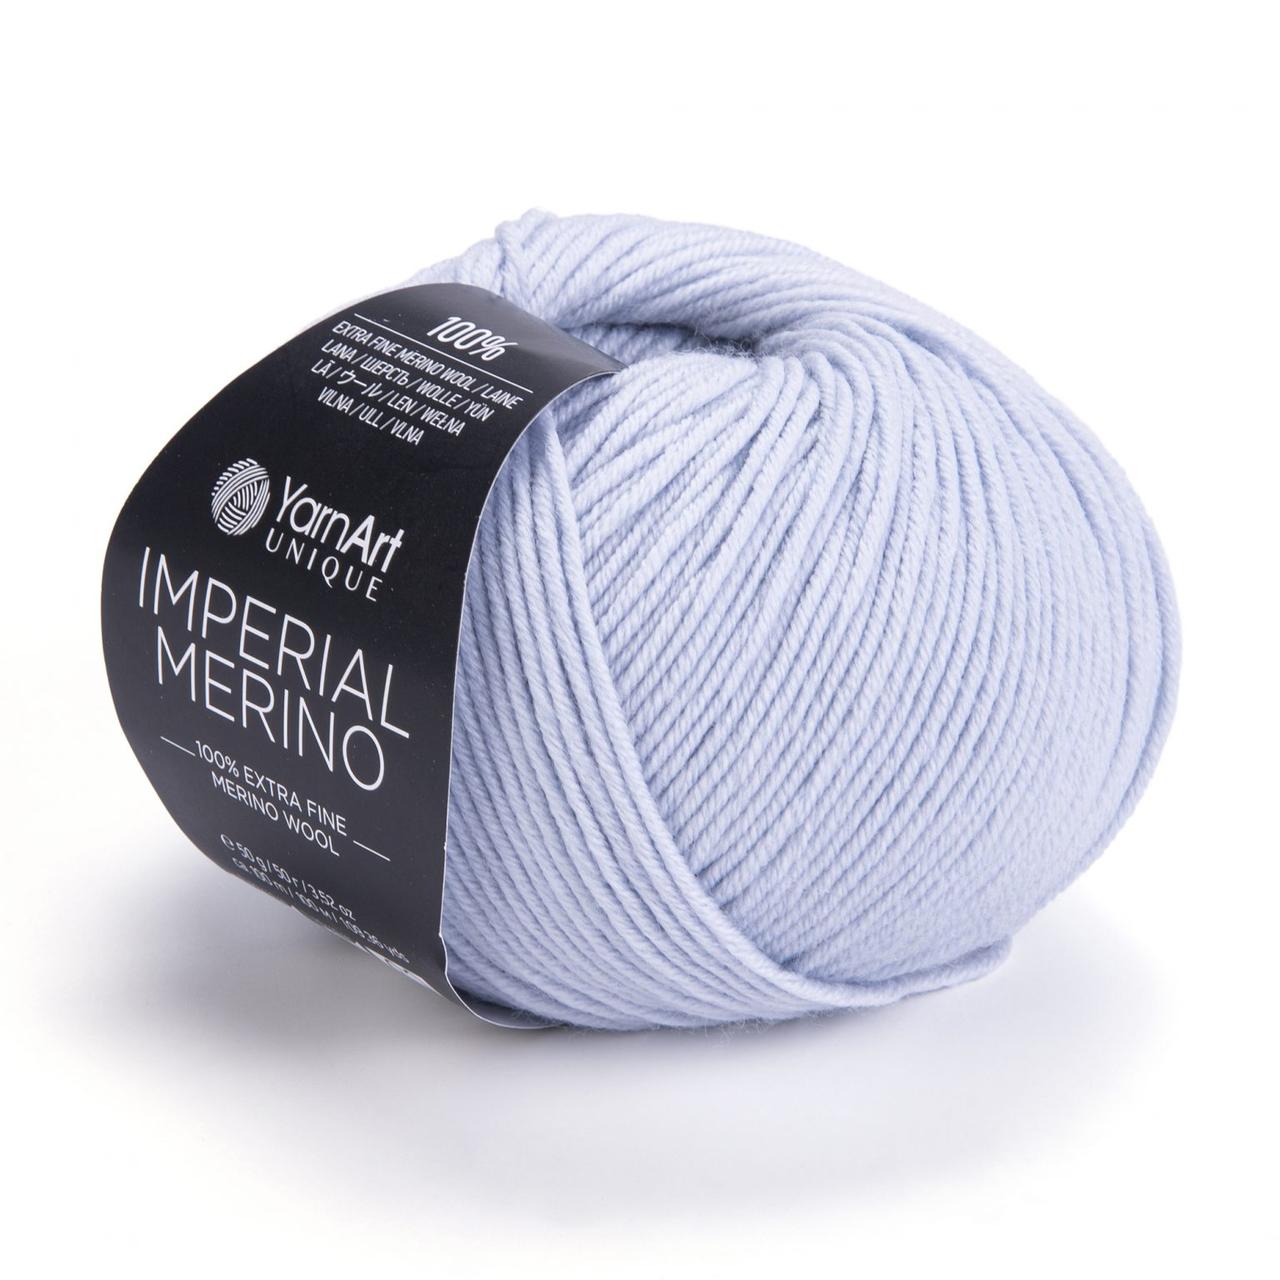 YarnArt Imperial Merino (пряжа Імперіал Меріно) 3339 блідо-блакитний